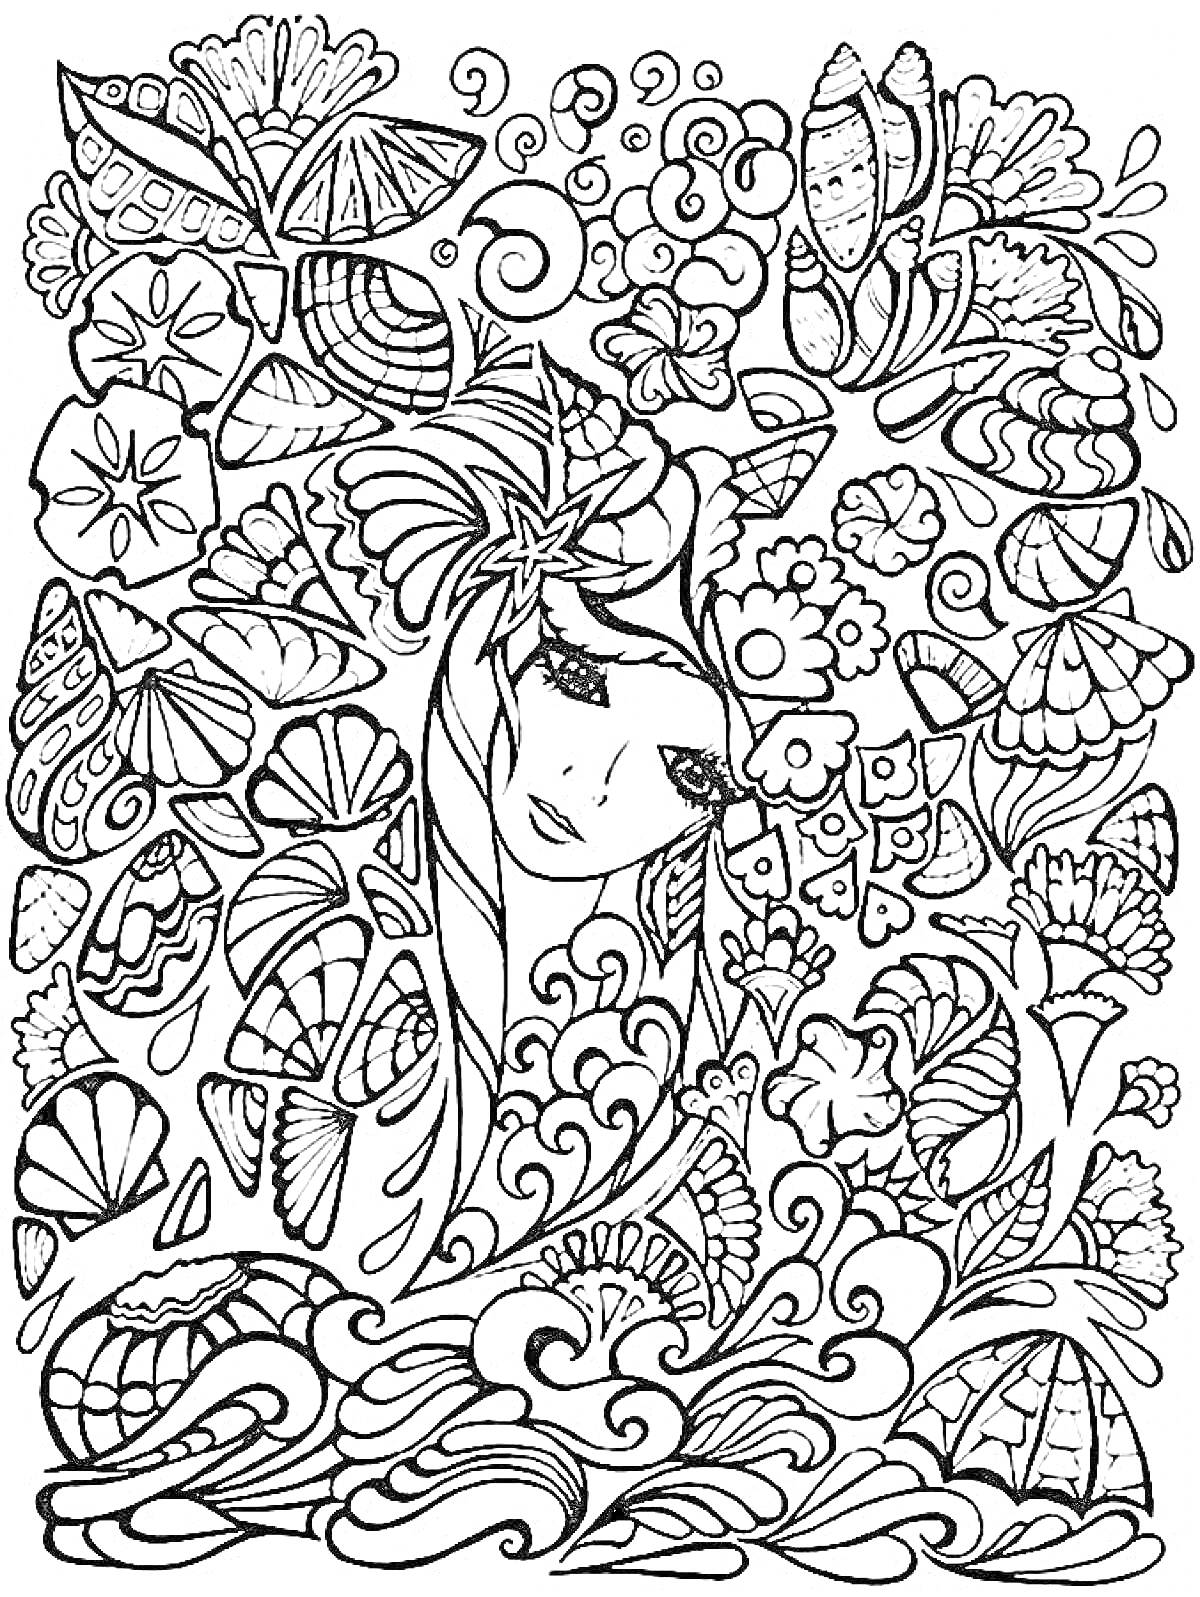 Женский портрет в окружении цветов, волн, ракушек и листьев